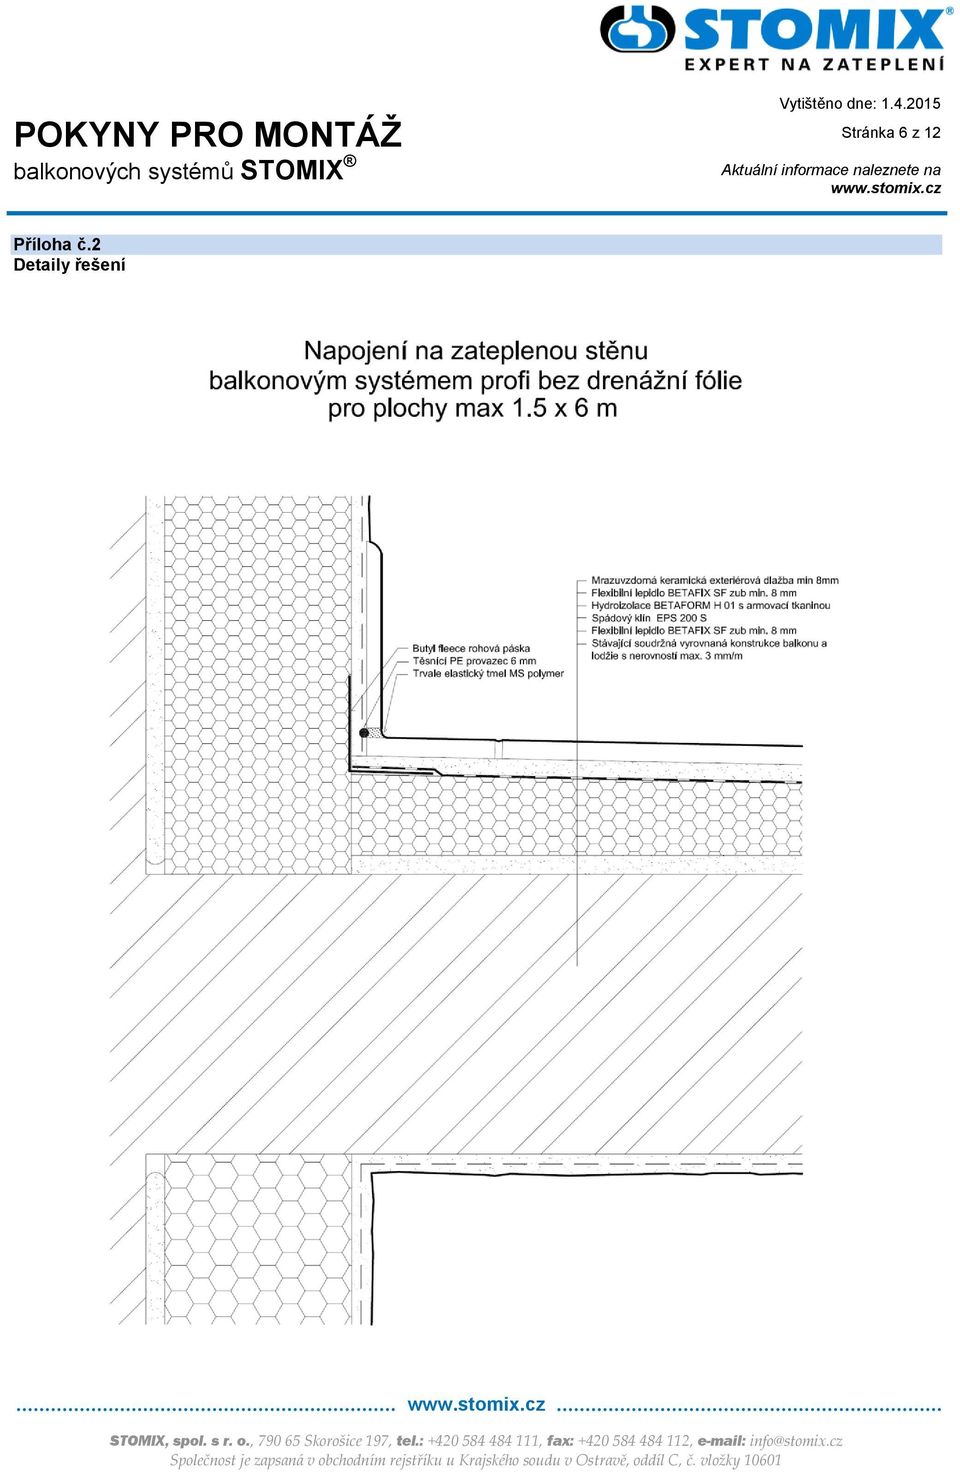 POKYNY PRO MONTÁŽ balkonových systémů STOMIX - PDF Free Download